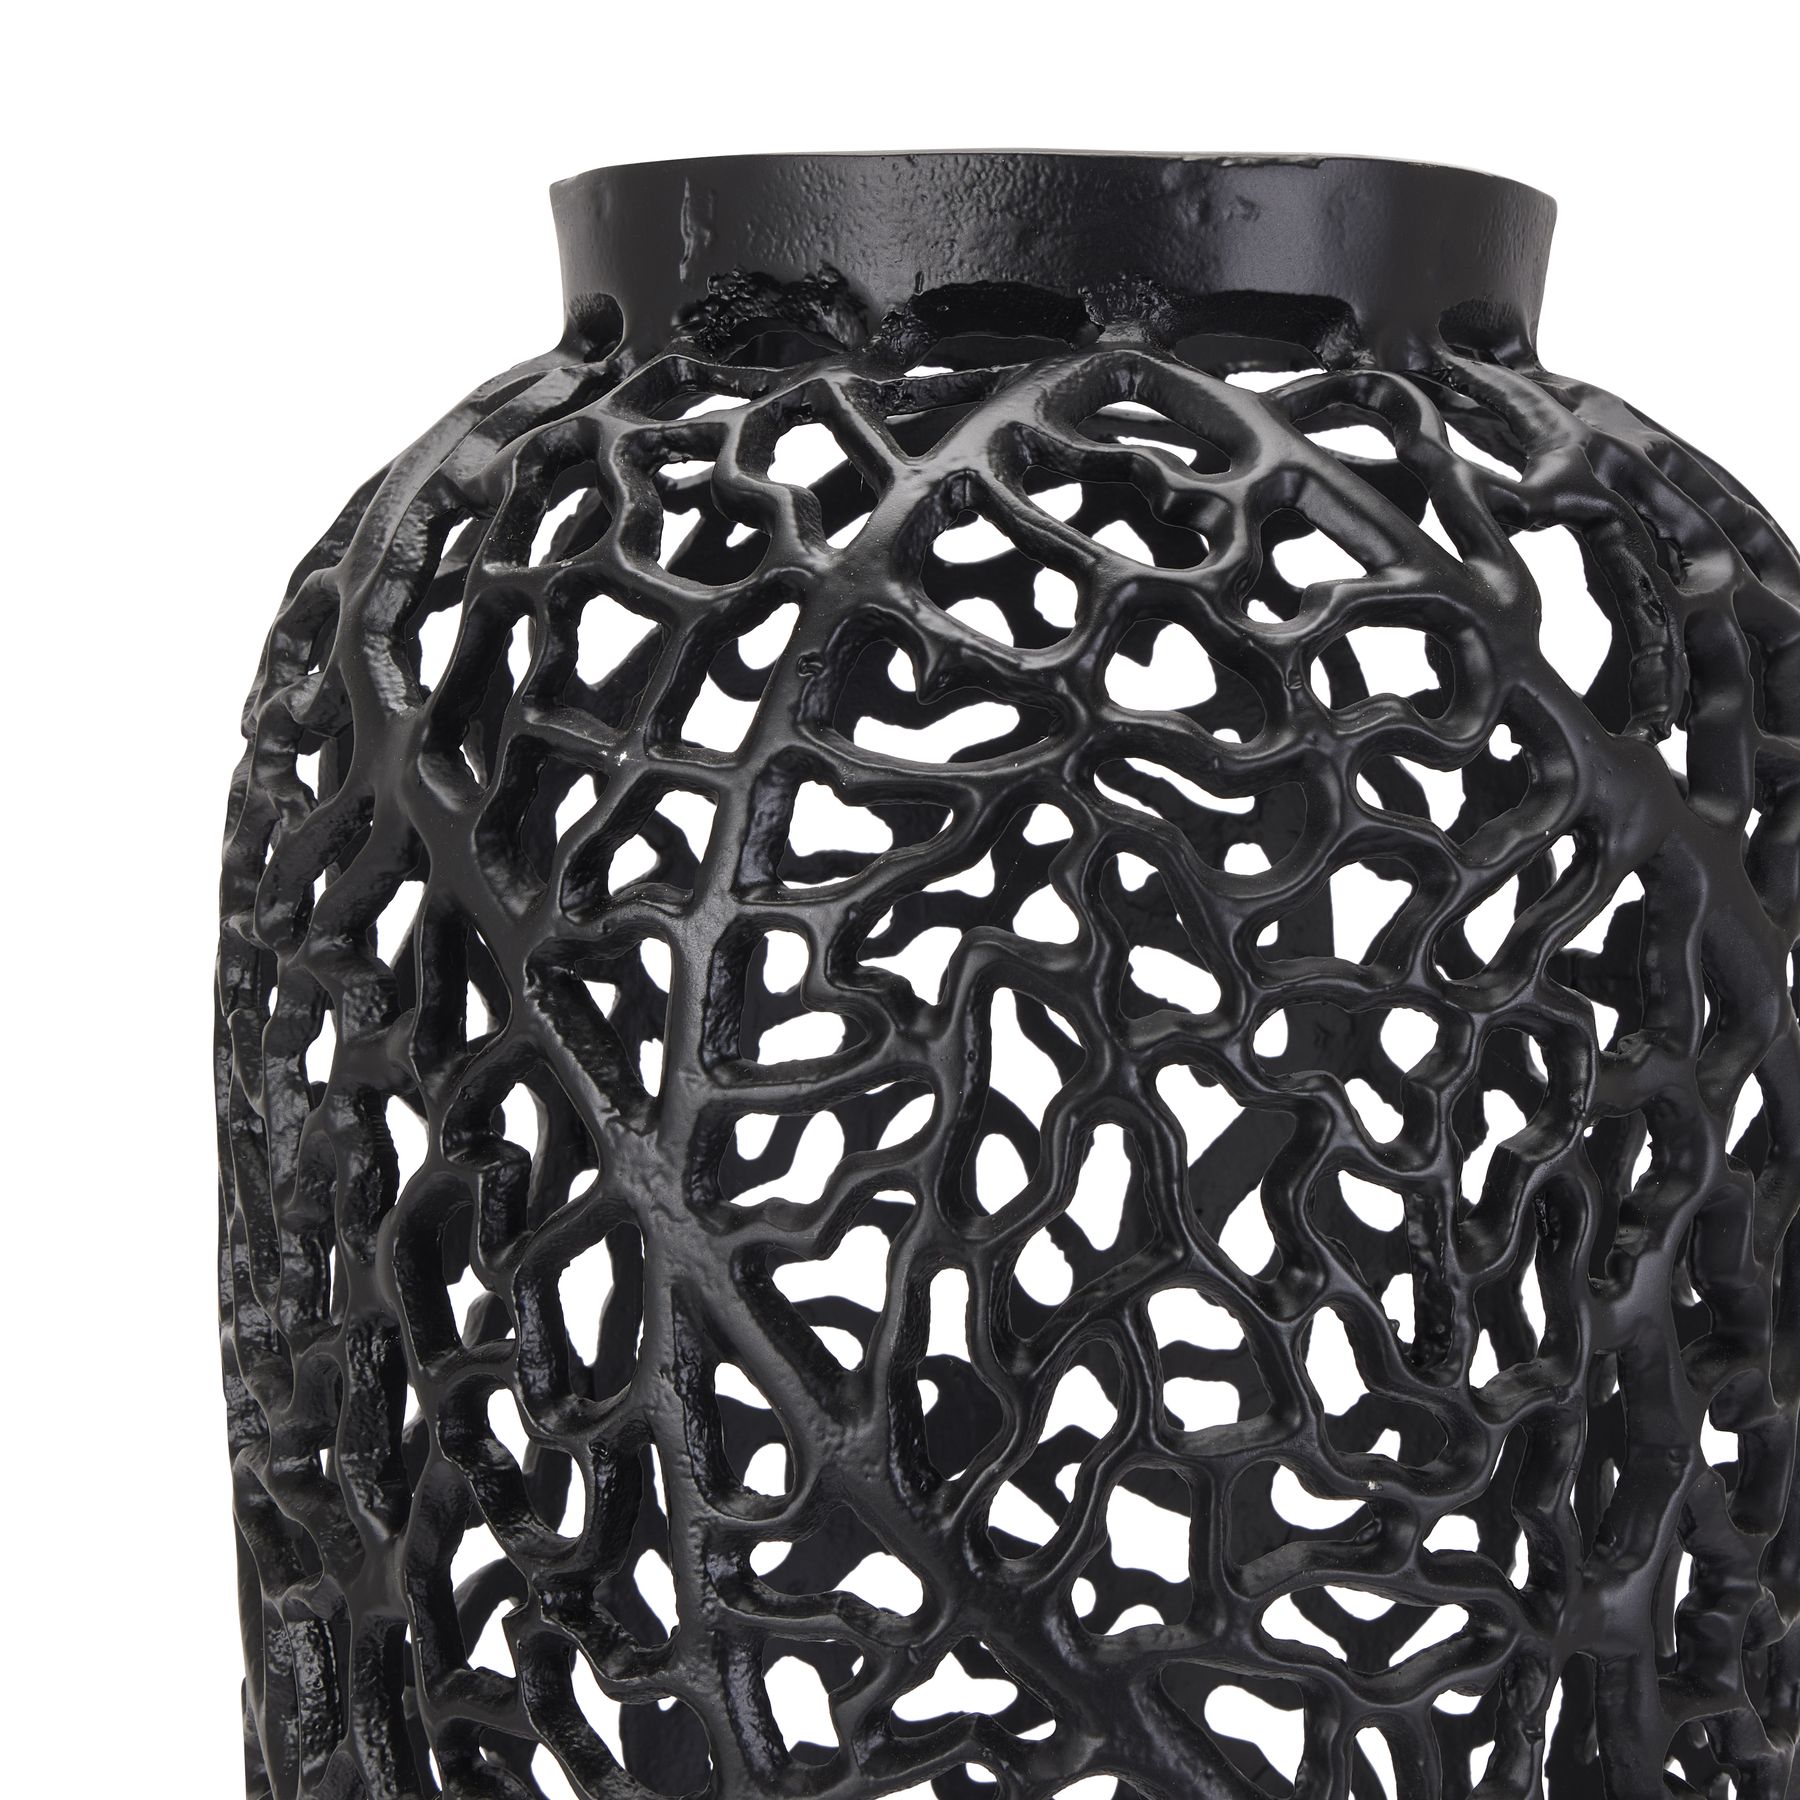 Black Cast Lattice Vase - Image 2